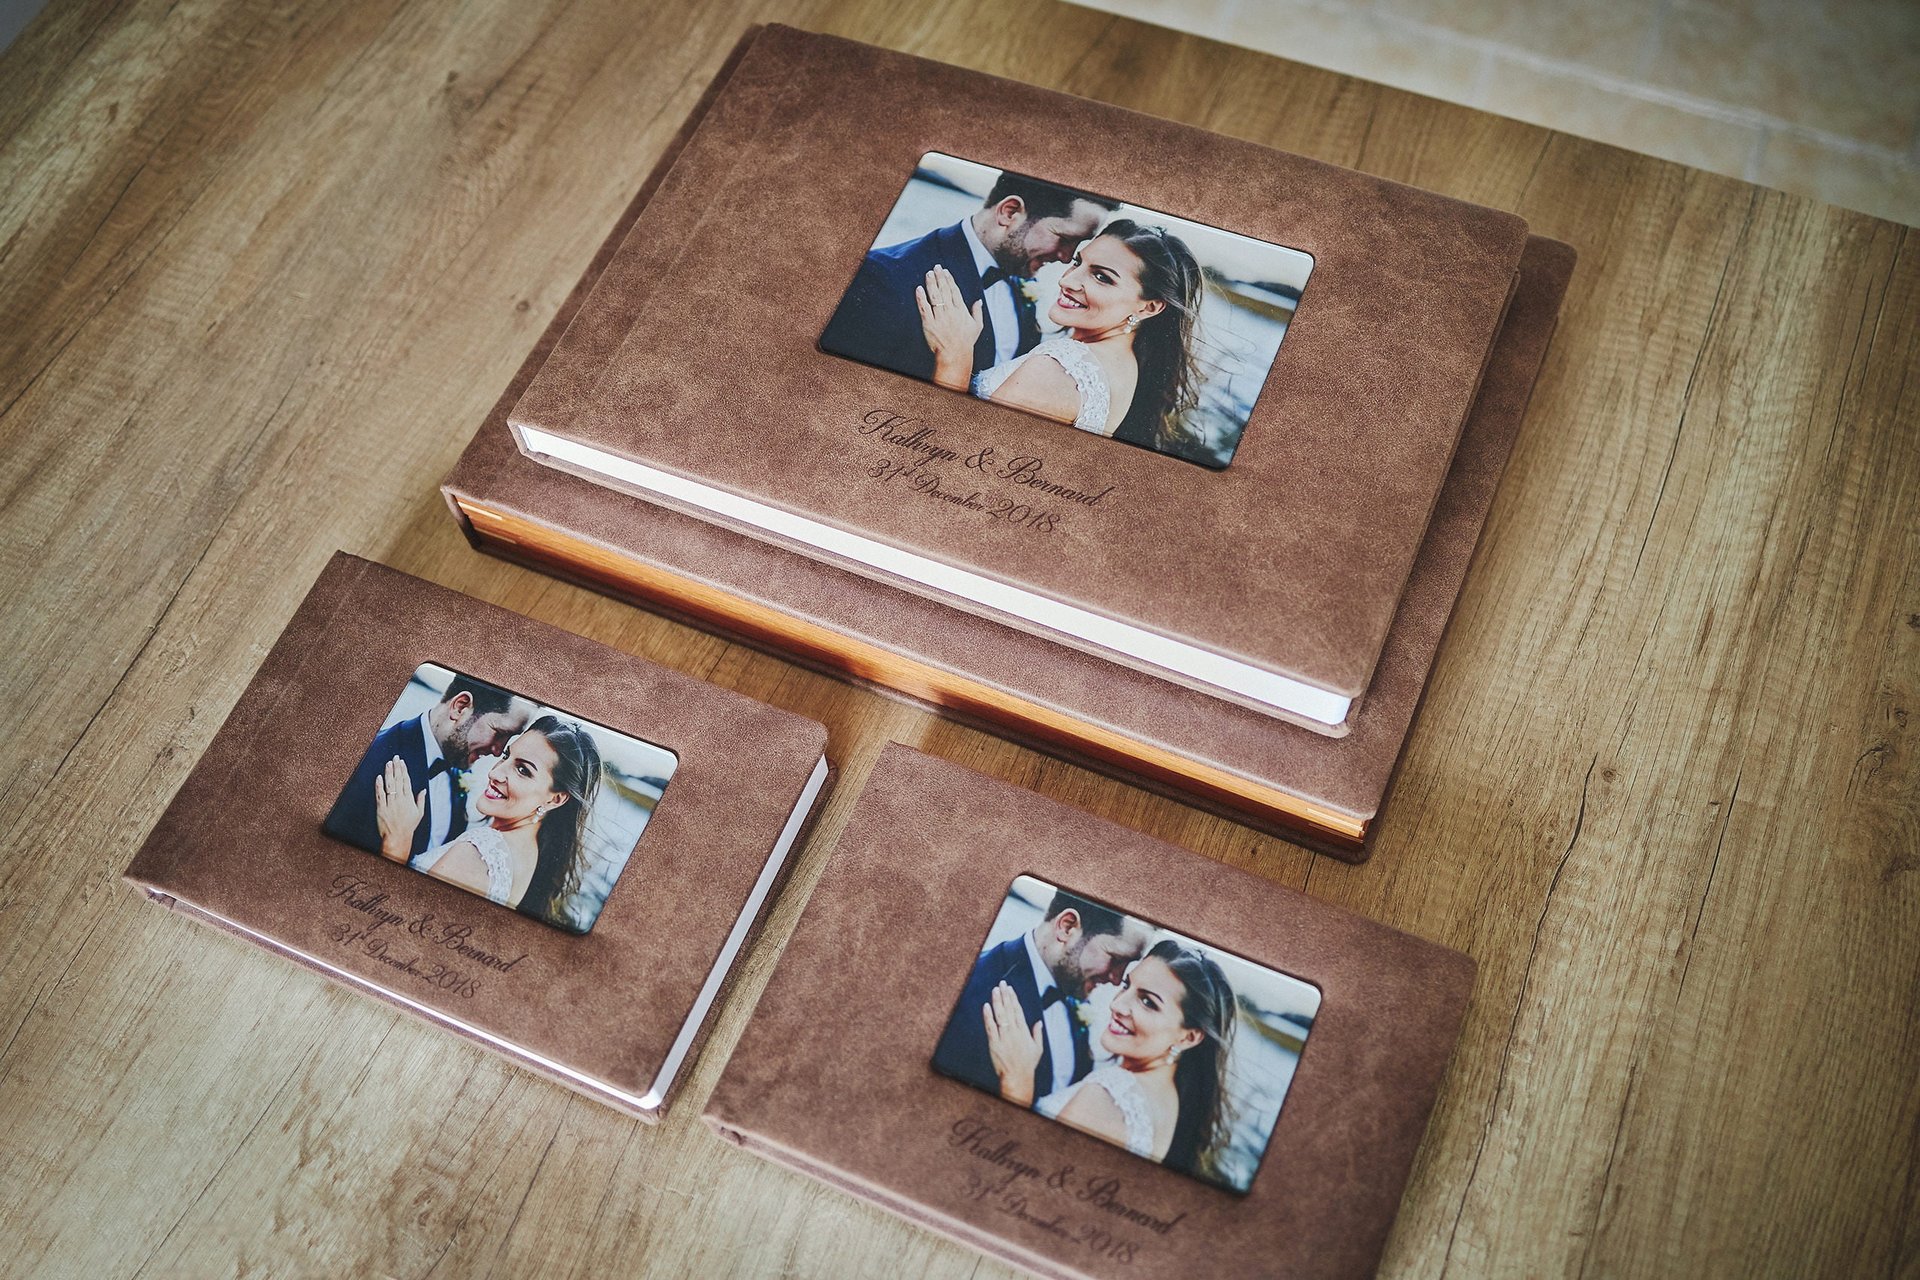 Chúng tôi cung cấp dịch vụ photobook chất lượng cao. Bạn có thể lựa chọn để in bộ ảnh cưới của mình thành cuốn photobook để gói gọn những khoảnh khắc vô giá trong cuộc đời vào một thứ quà ý nghĩa. Xem các ảnh liên quan để lựa chọn một mẫu bìa cho cuốn photobook của bạn.